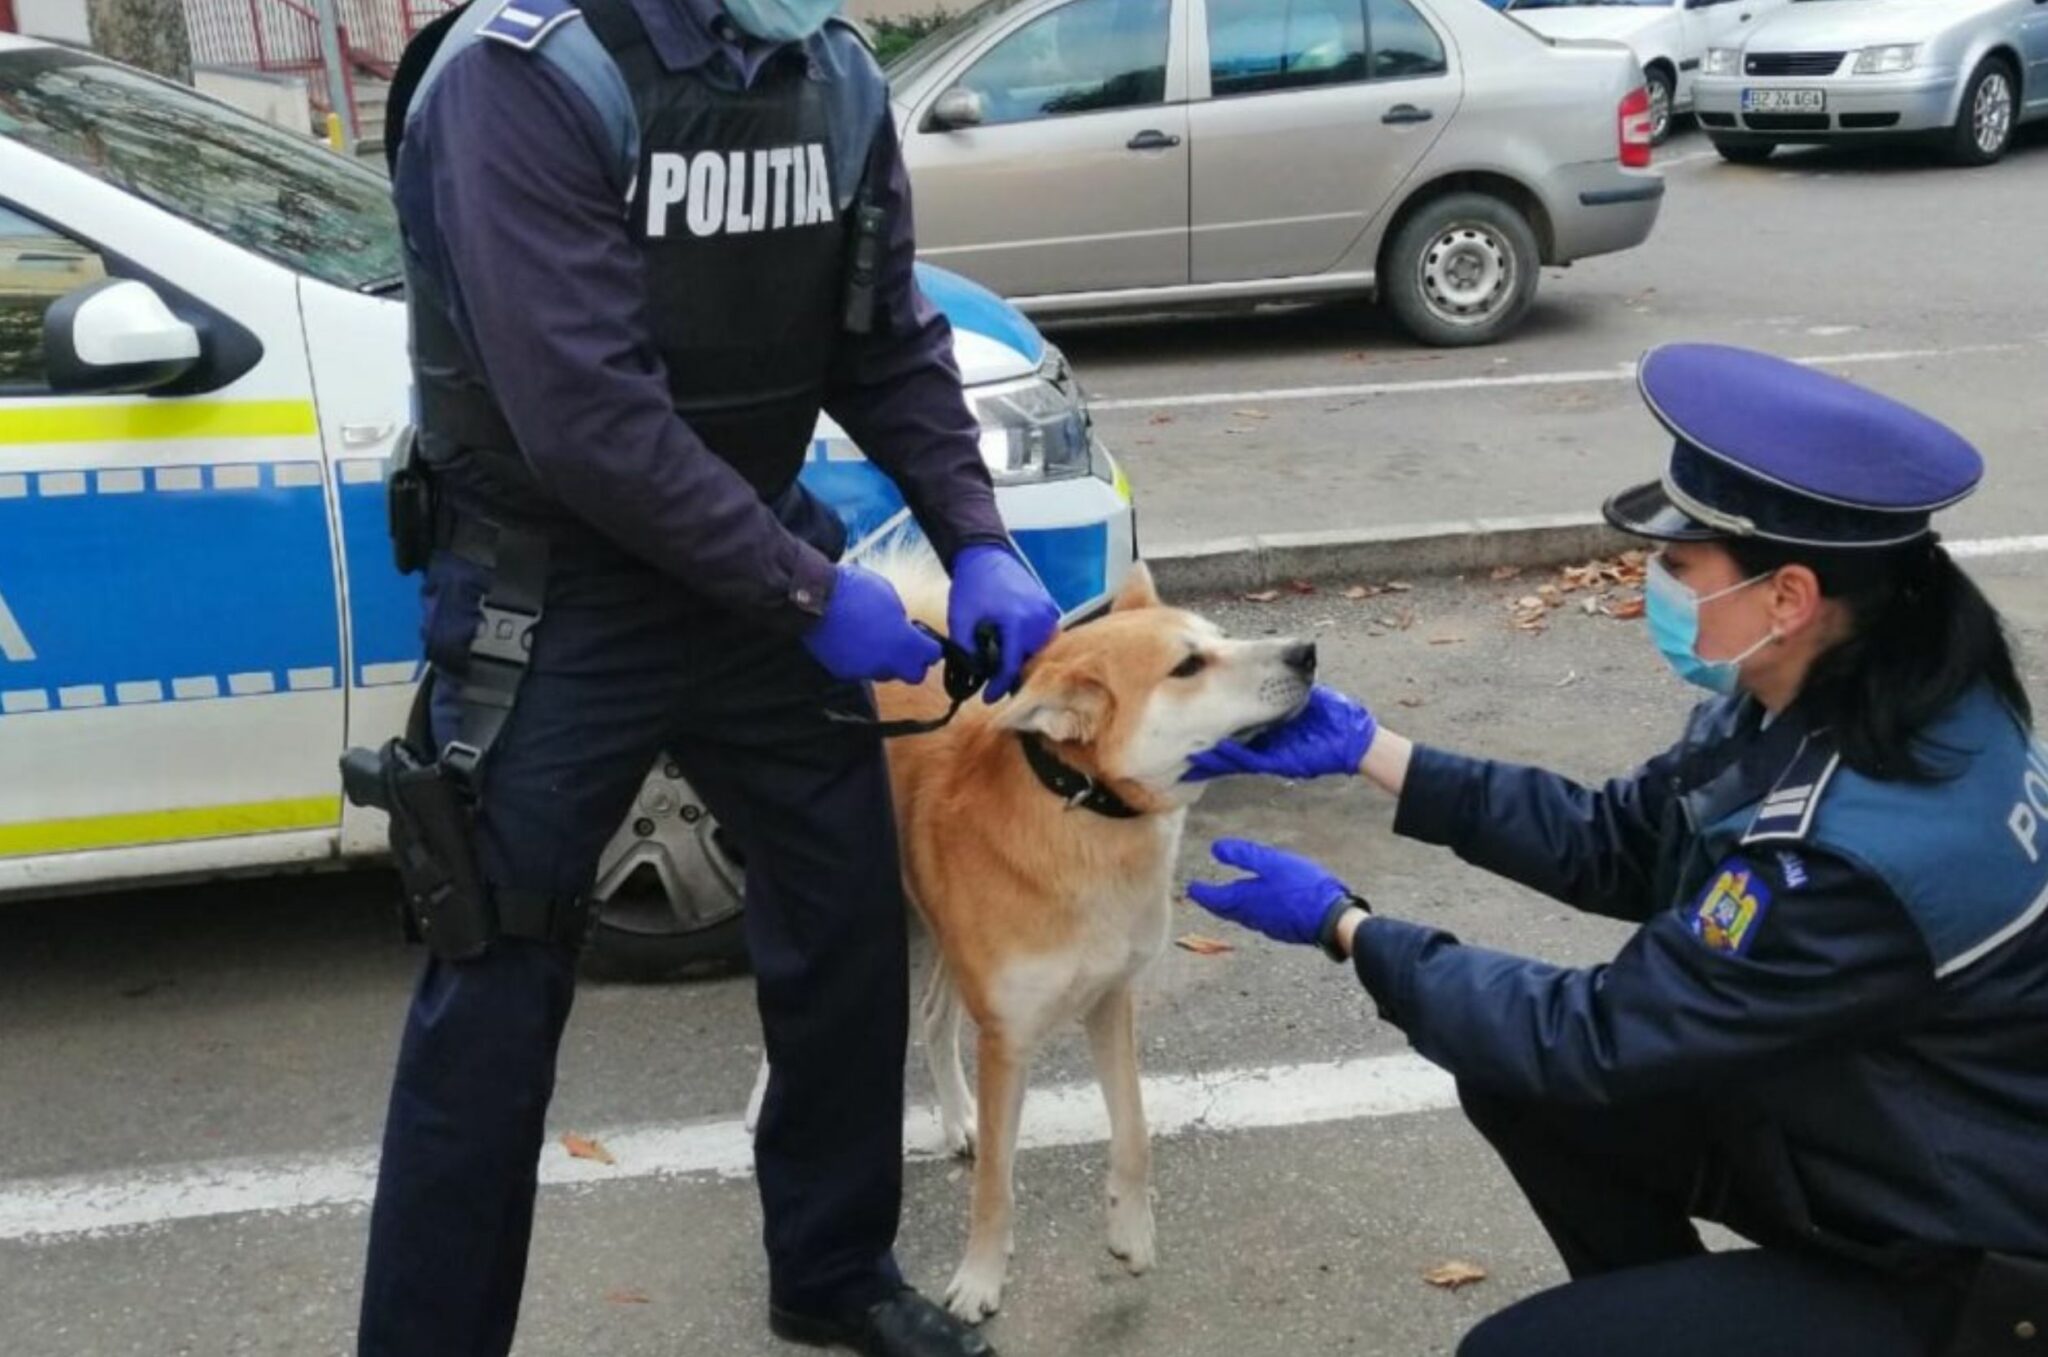 Poliția Animalelor